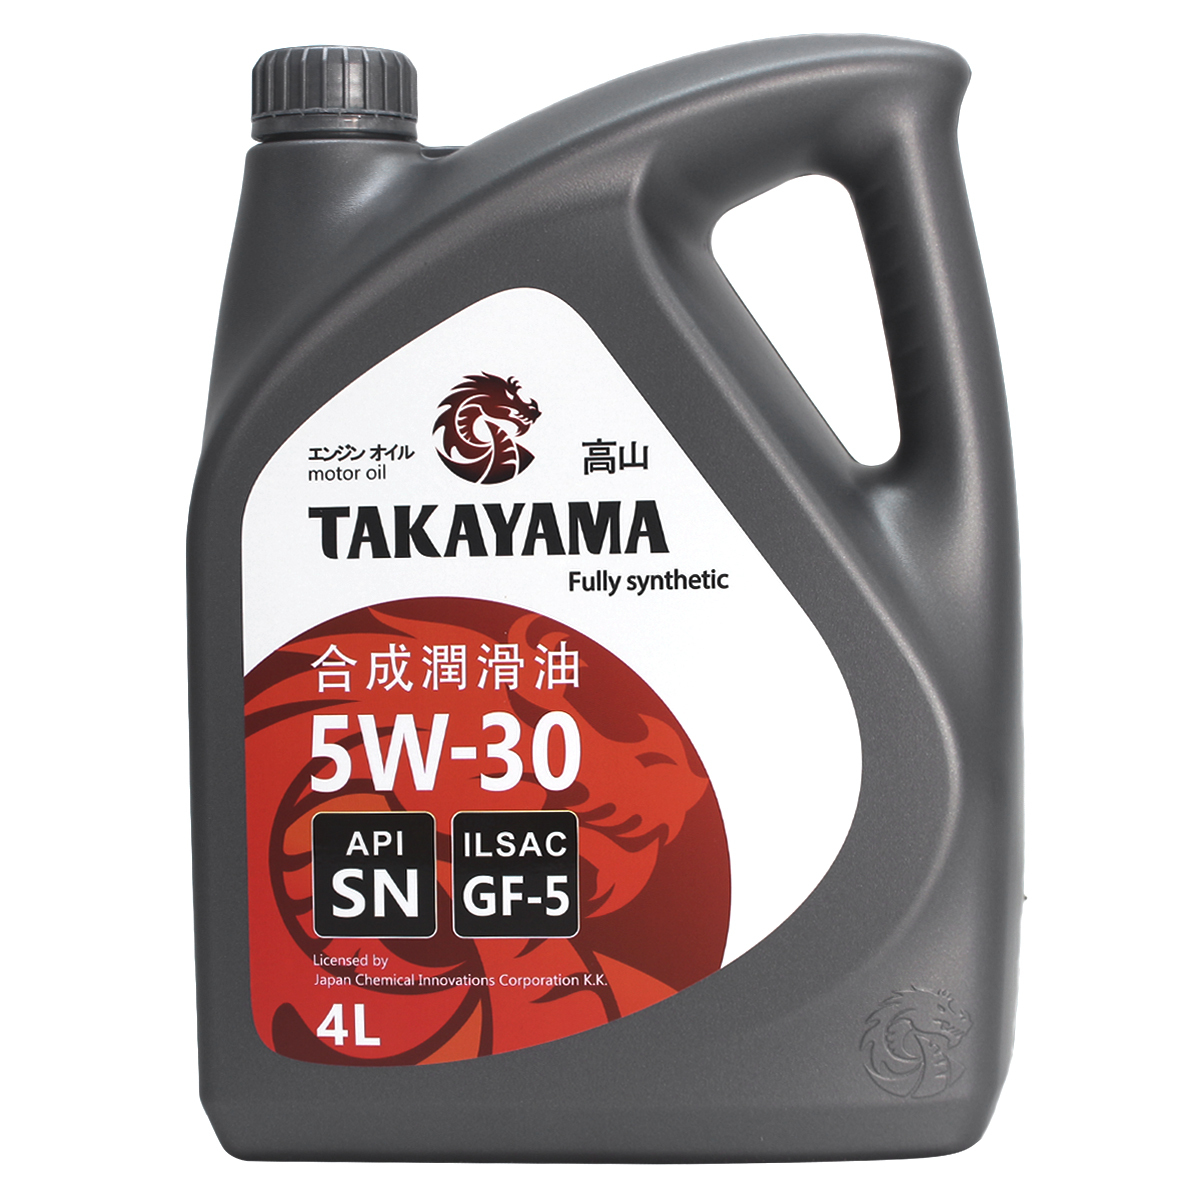 Отзывы о масле такаяма. GM 5/30 4л синтетическое 1942002. Takayama 5w30 API SN ILSAC gf-5 4 литра. Отзывы о масле Такаяма 5w30 синтетика. Моторное масло пилот 5w30 отзывы.